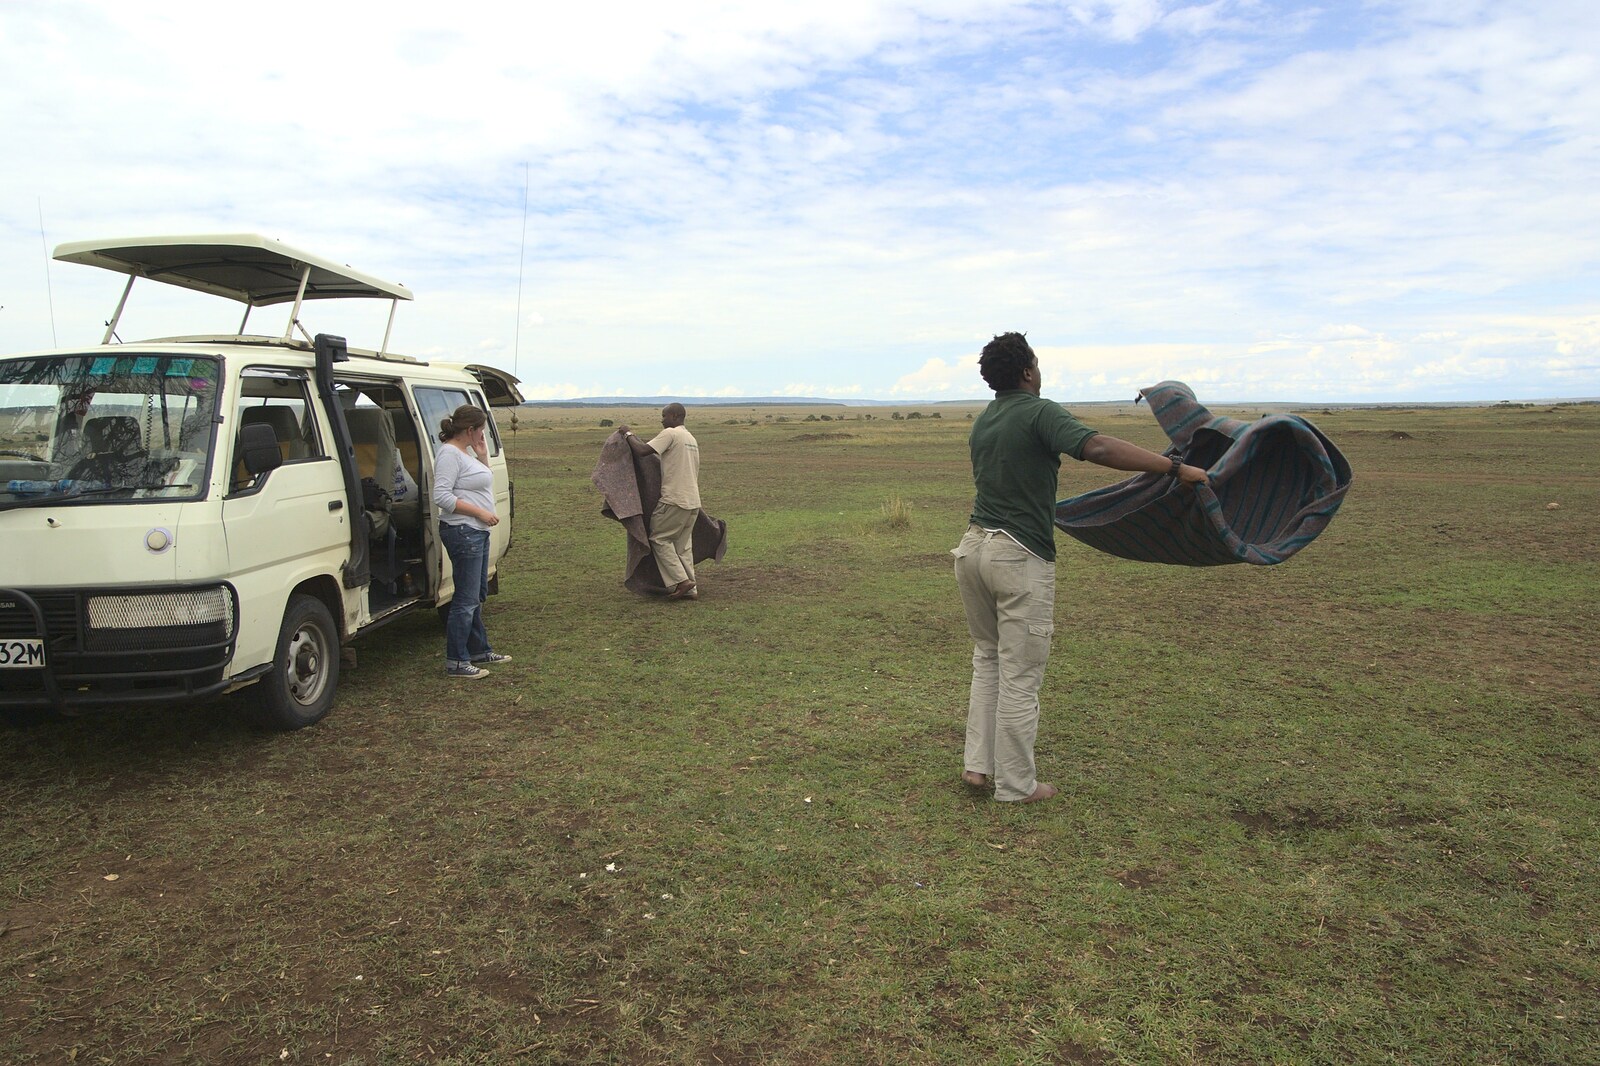 Picnic over, Will shakes out the blanket from Maasai Mara Safari and a Maasai Village, Ololaimutia, Kenya - 5th November 2010